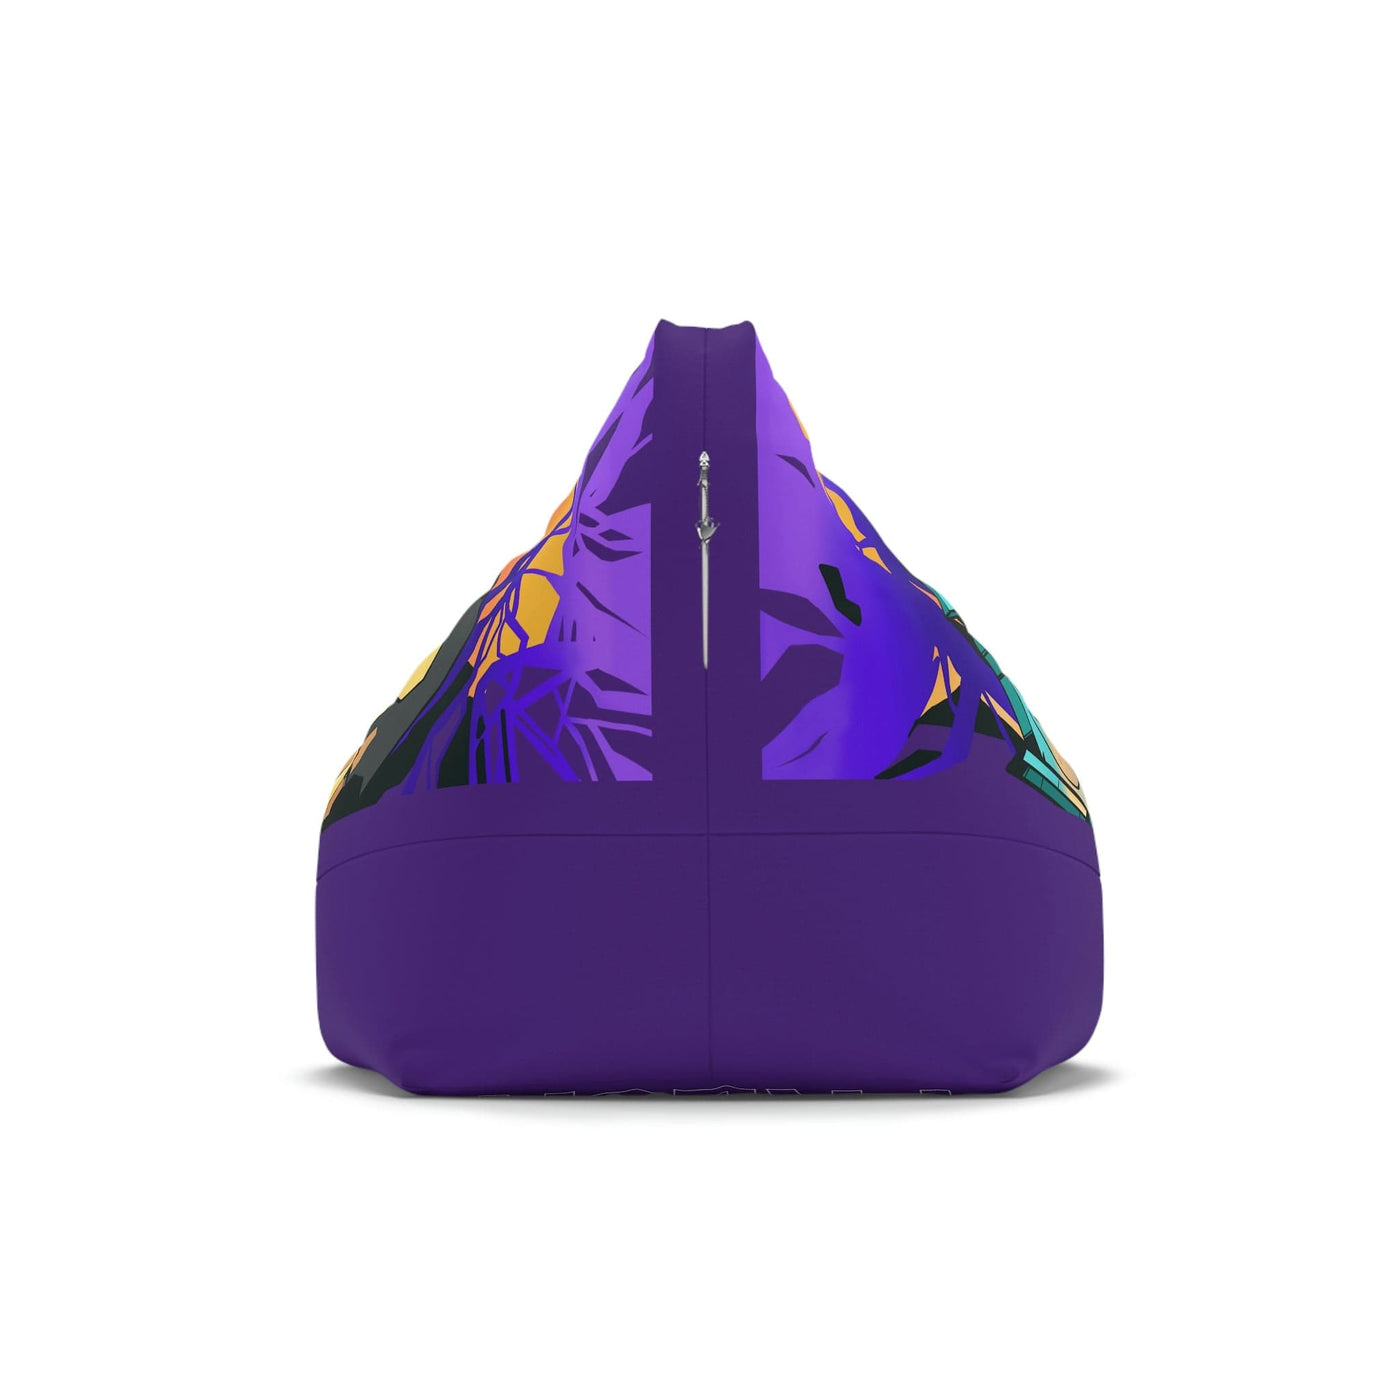 The Gamer Fresh Graffiti Streamer | All Art Lion NYC Mural | Purple Grape Bean Bag Chair